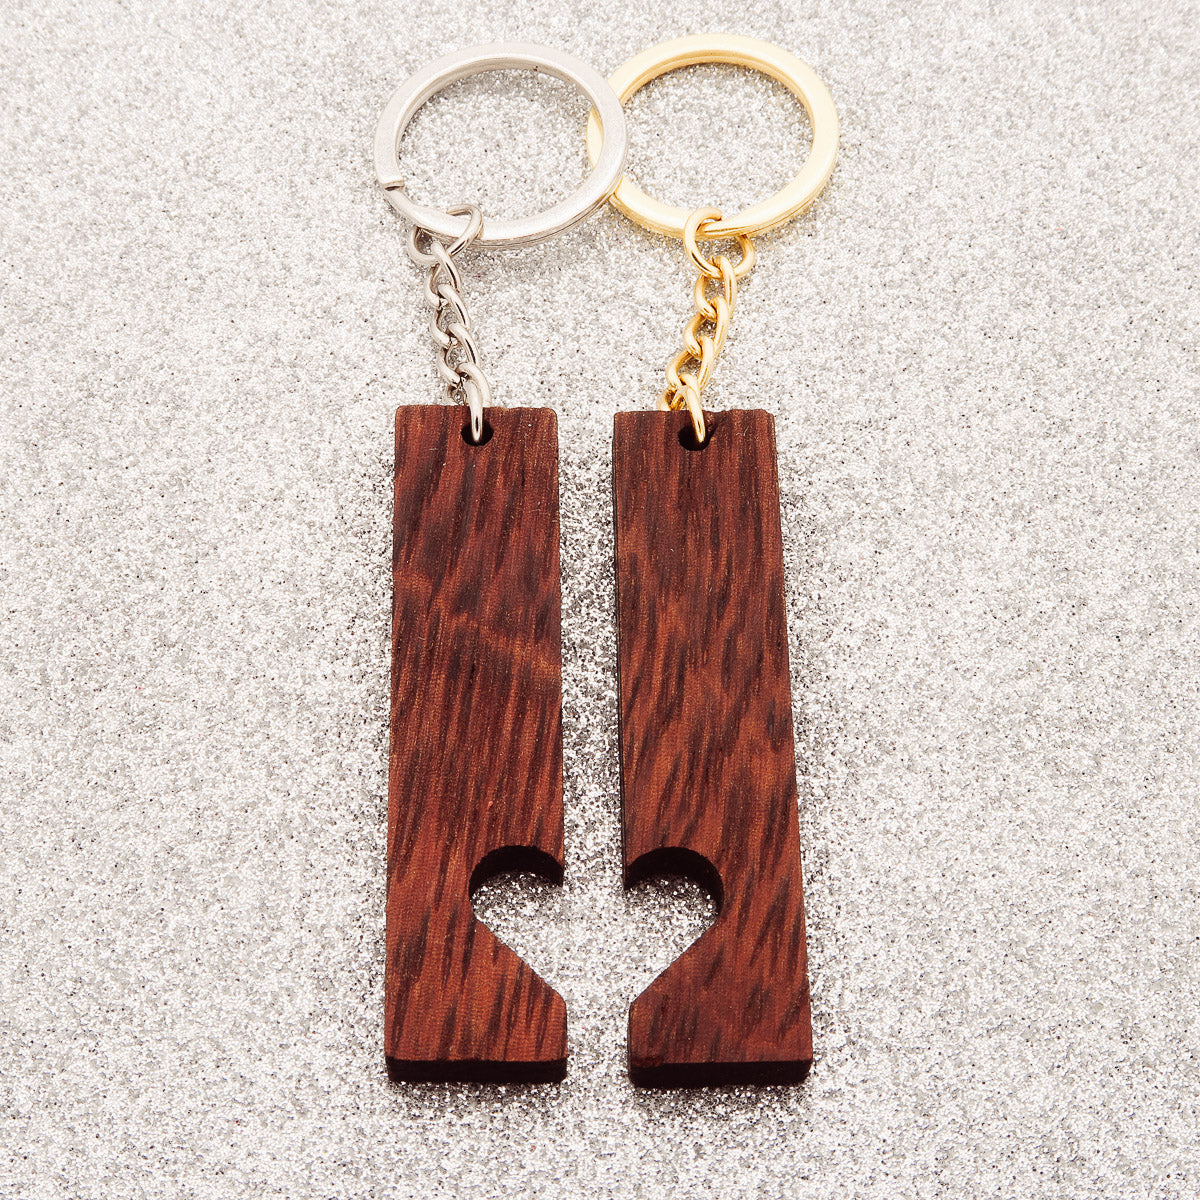 Partner Key Pendant Set "Heart to Heart Walnut" gemaakt van hout - met gravure